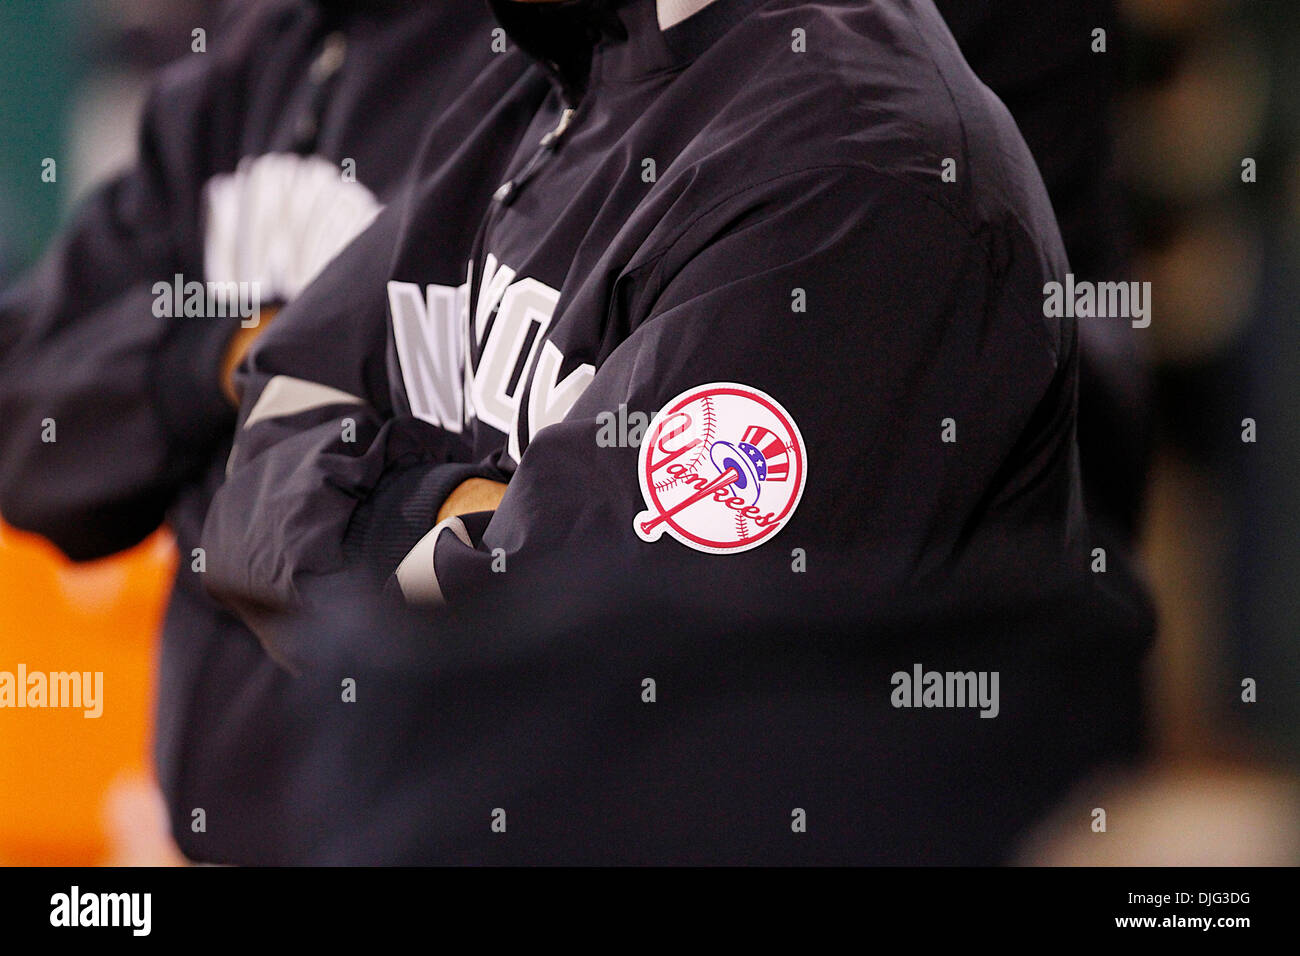 06-Juillet-2010 : Oakland, CA : Oakland Athletics accueillir les Yankees de New York. New York Yankees logo sur la veste de New York Yankees gérant Joe Girardi (28) New York a gagné le match 6-1. (Crédit Image : © Southcreek Dinno Kovic/global/ZUMApress.com) Banque D'Images